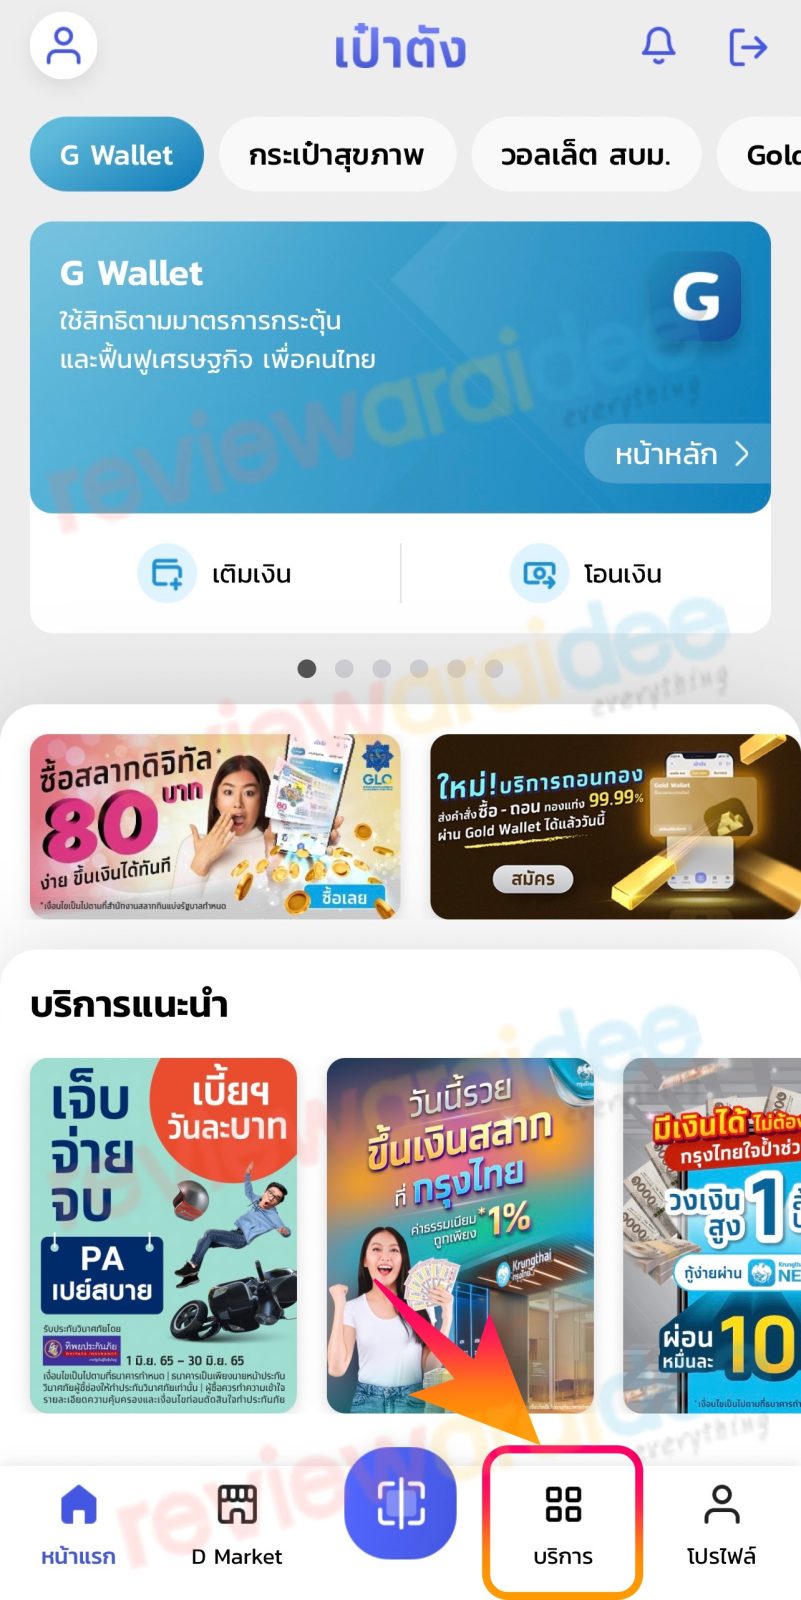 วิธีจ่ายหนี้ กยศ. กรอ. ผ่านแอปเป๋าตัง Paotang หักผ่านธนาคารกรุงไทย Krungthai NEXT